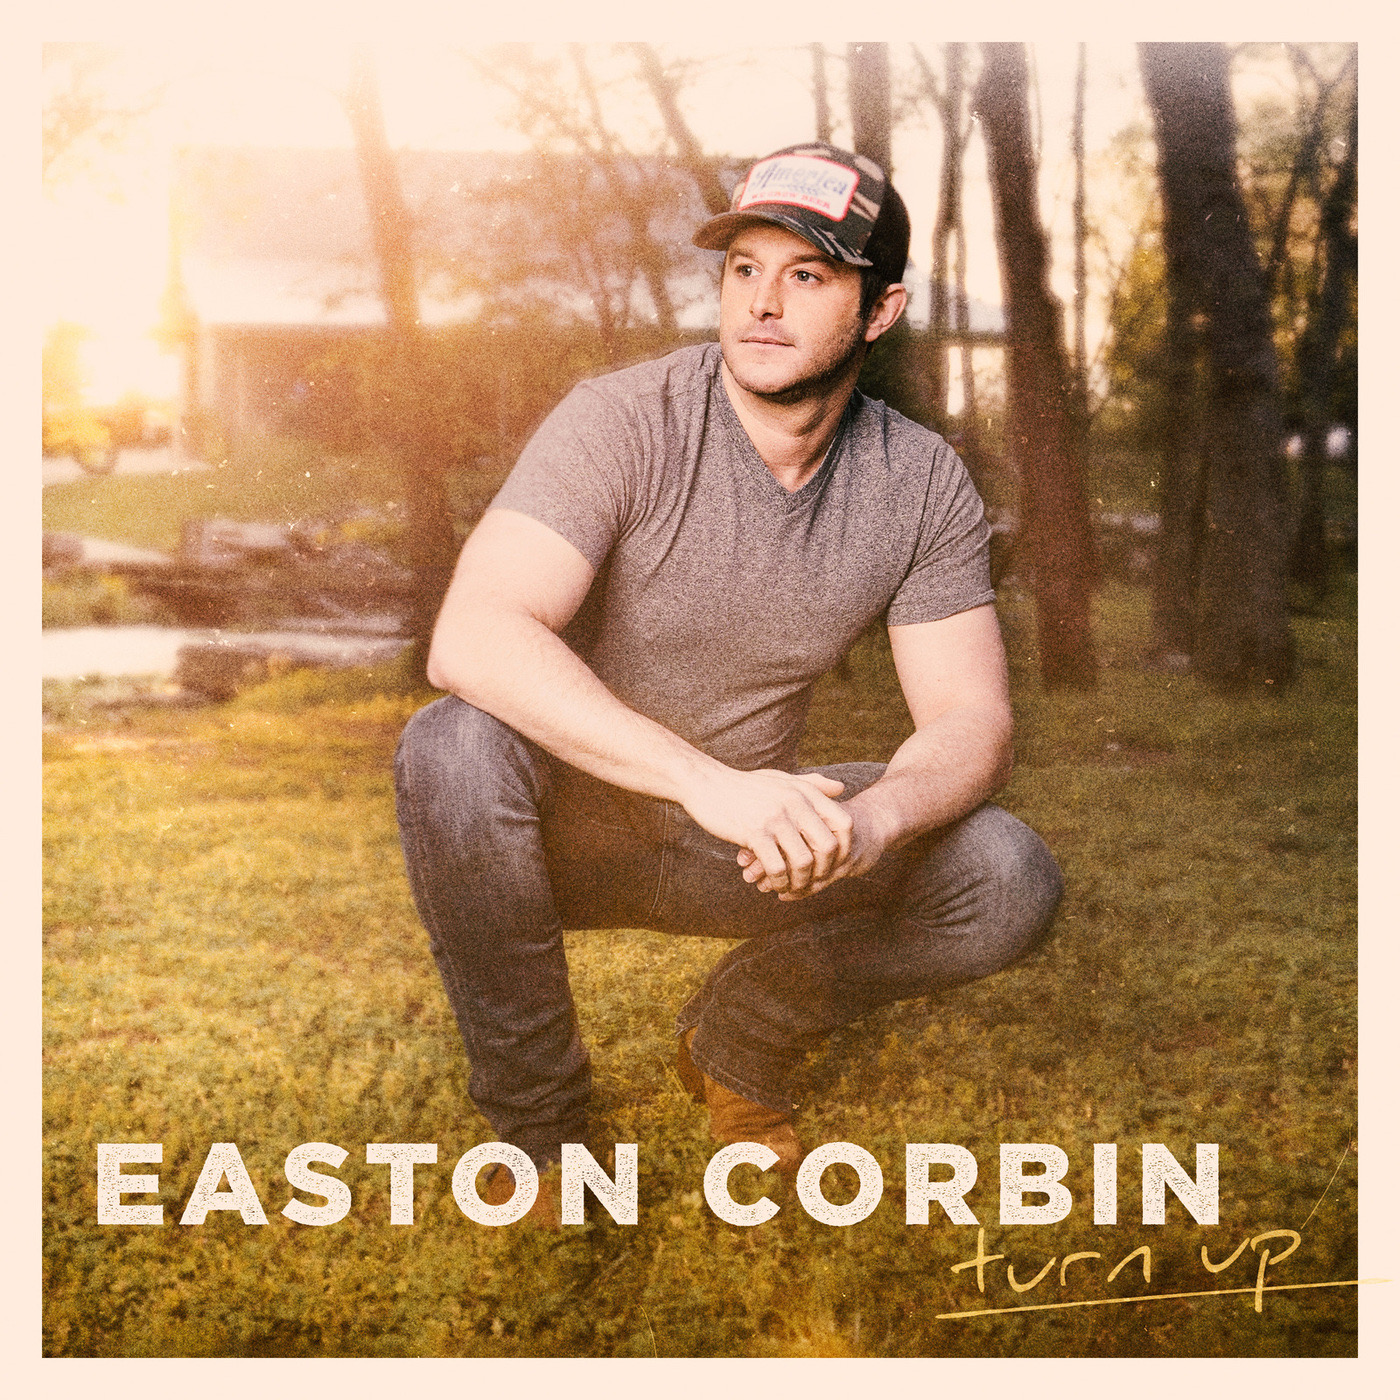 Easton Corbin - Turn Up